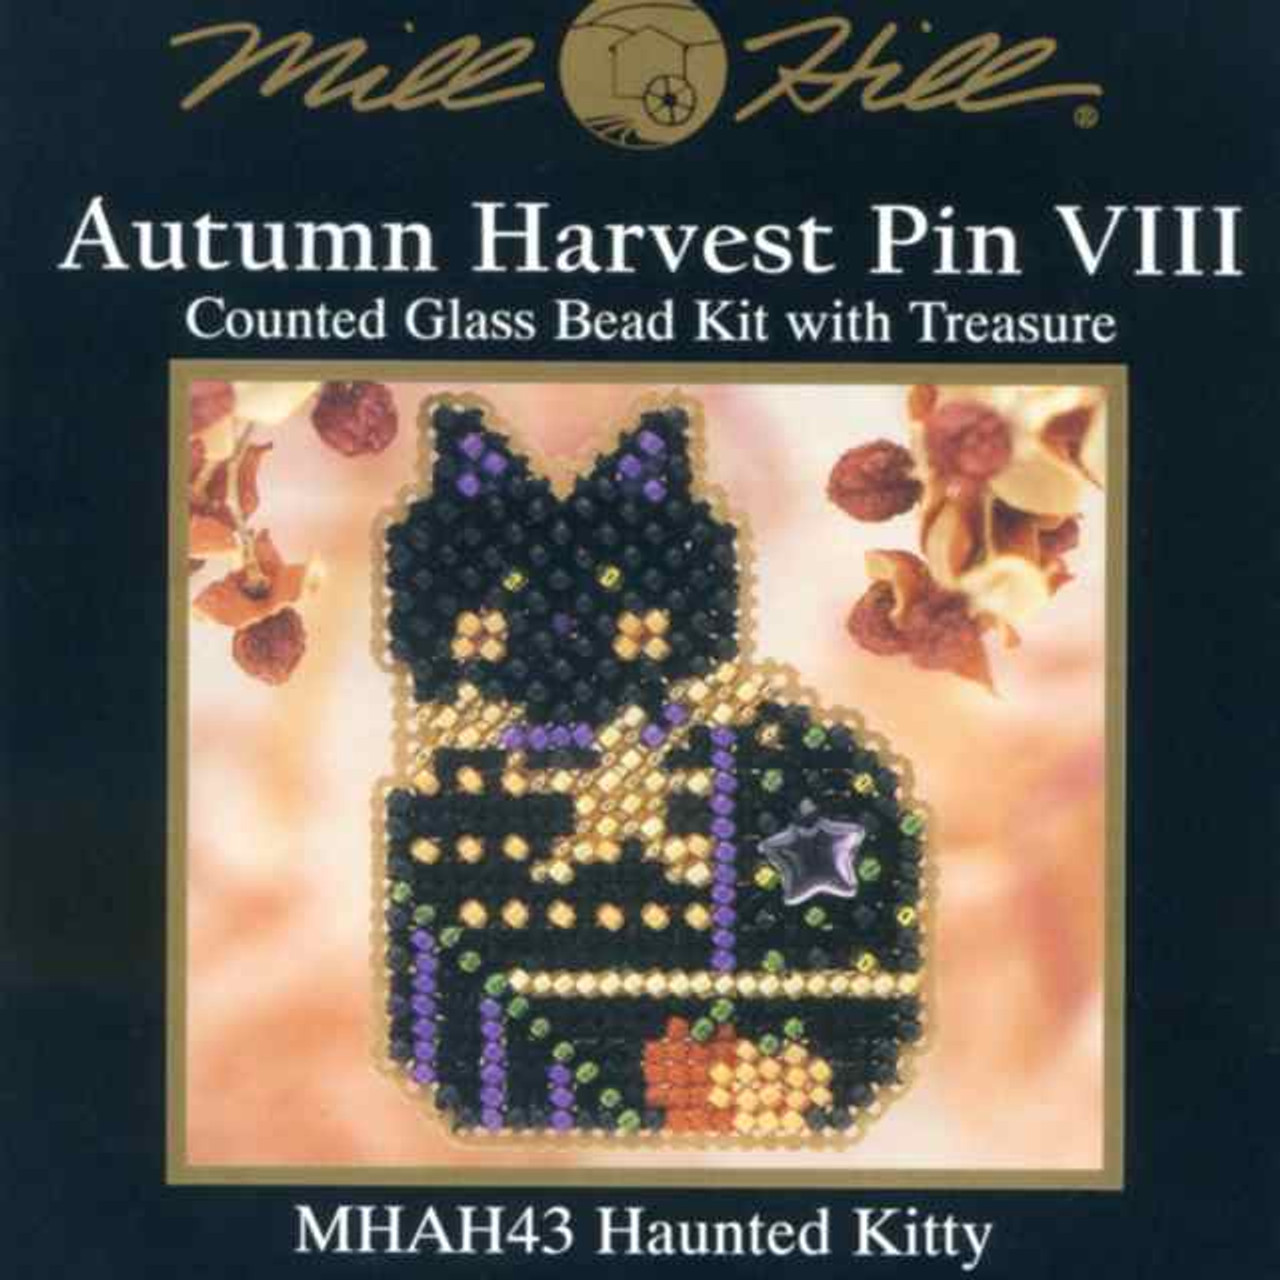 Haunted Kitty Halloween Bead Kit Mill Hill 2001 Autumn Harvest